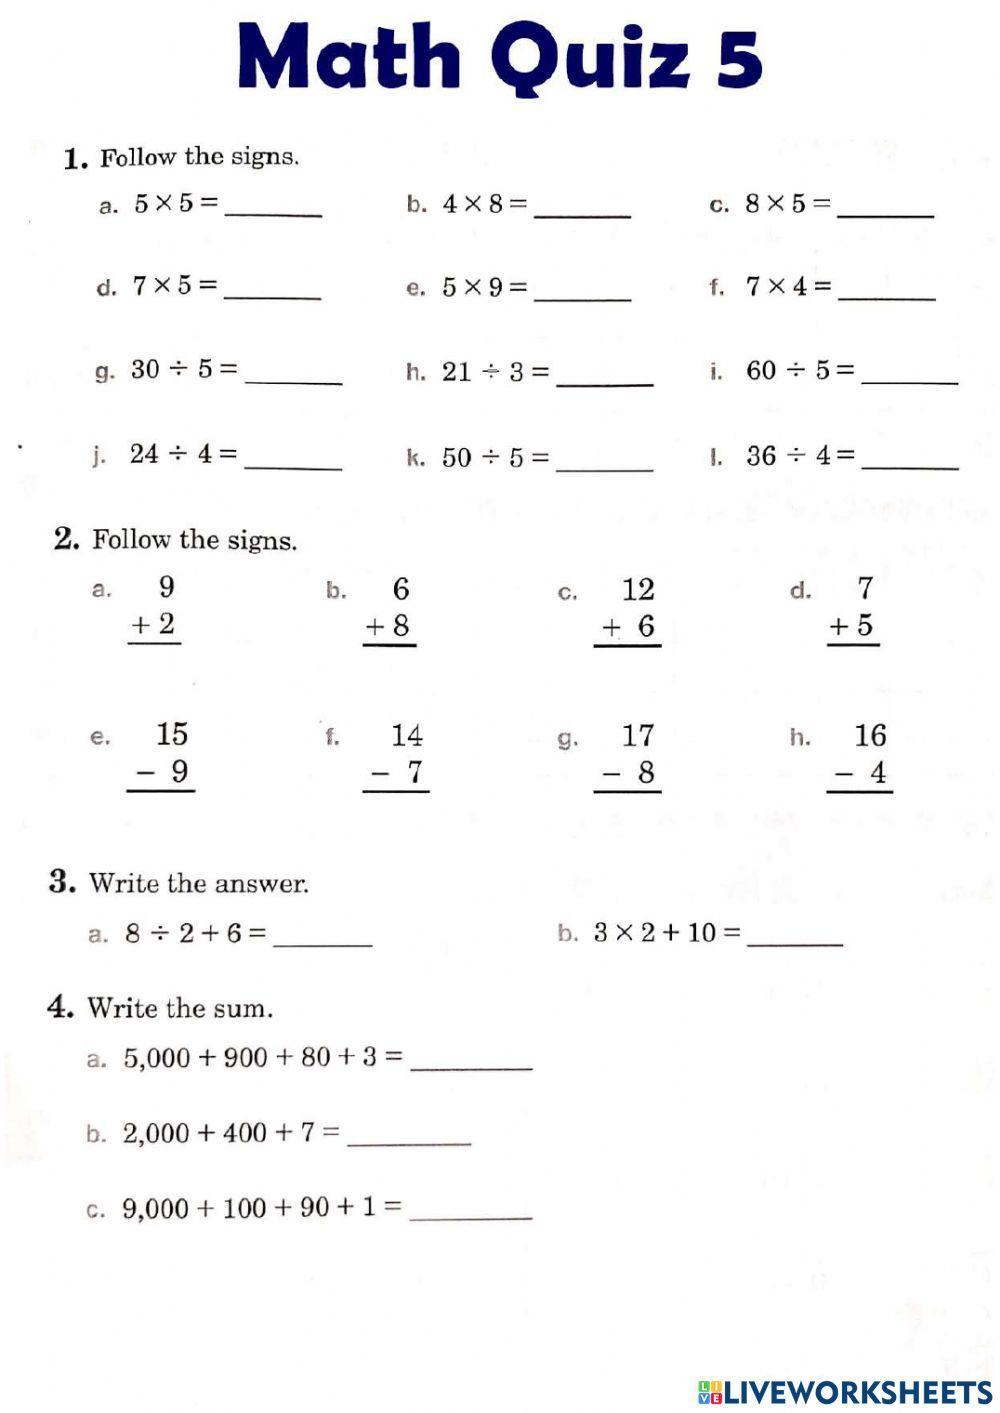 Math Quiz 5